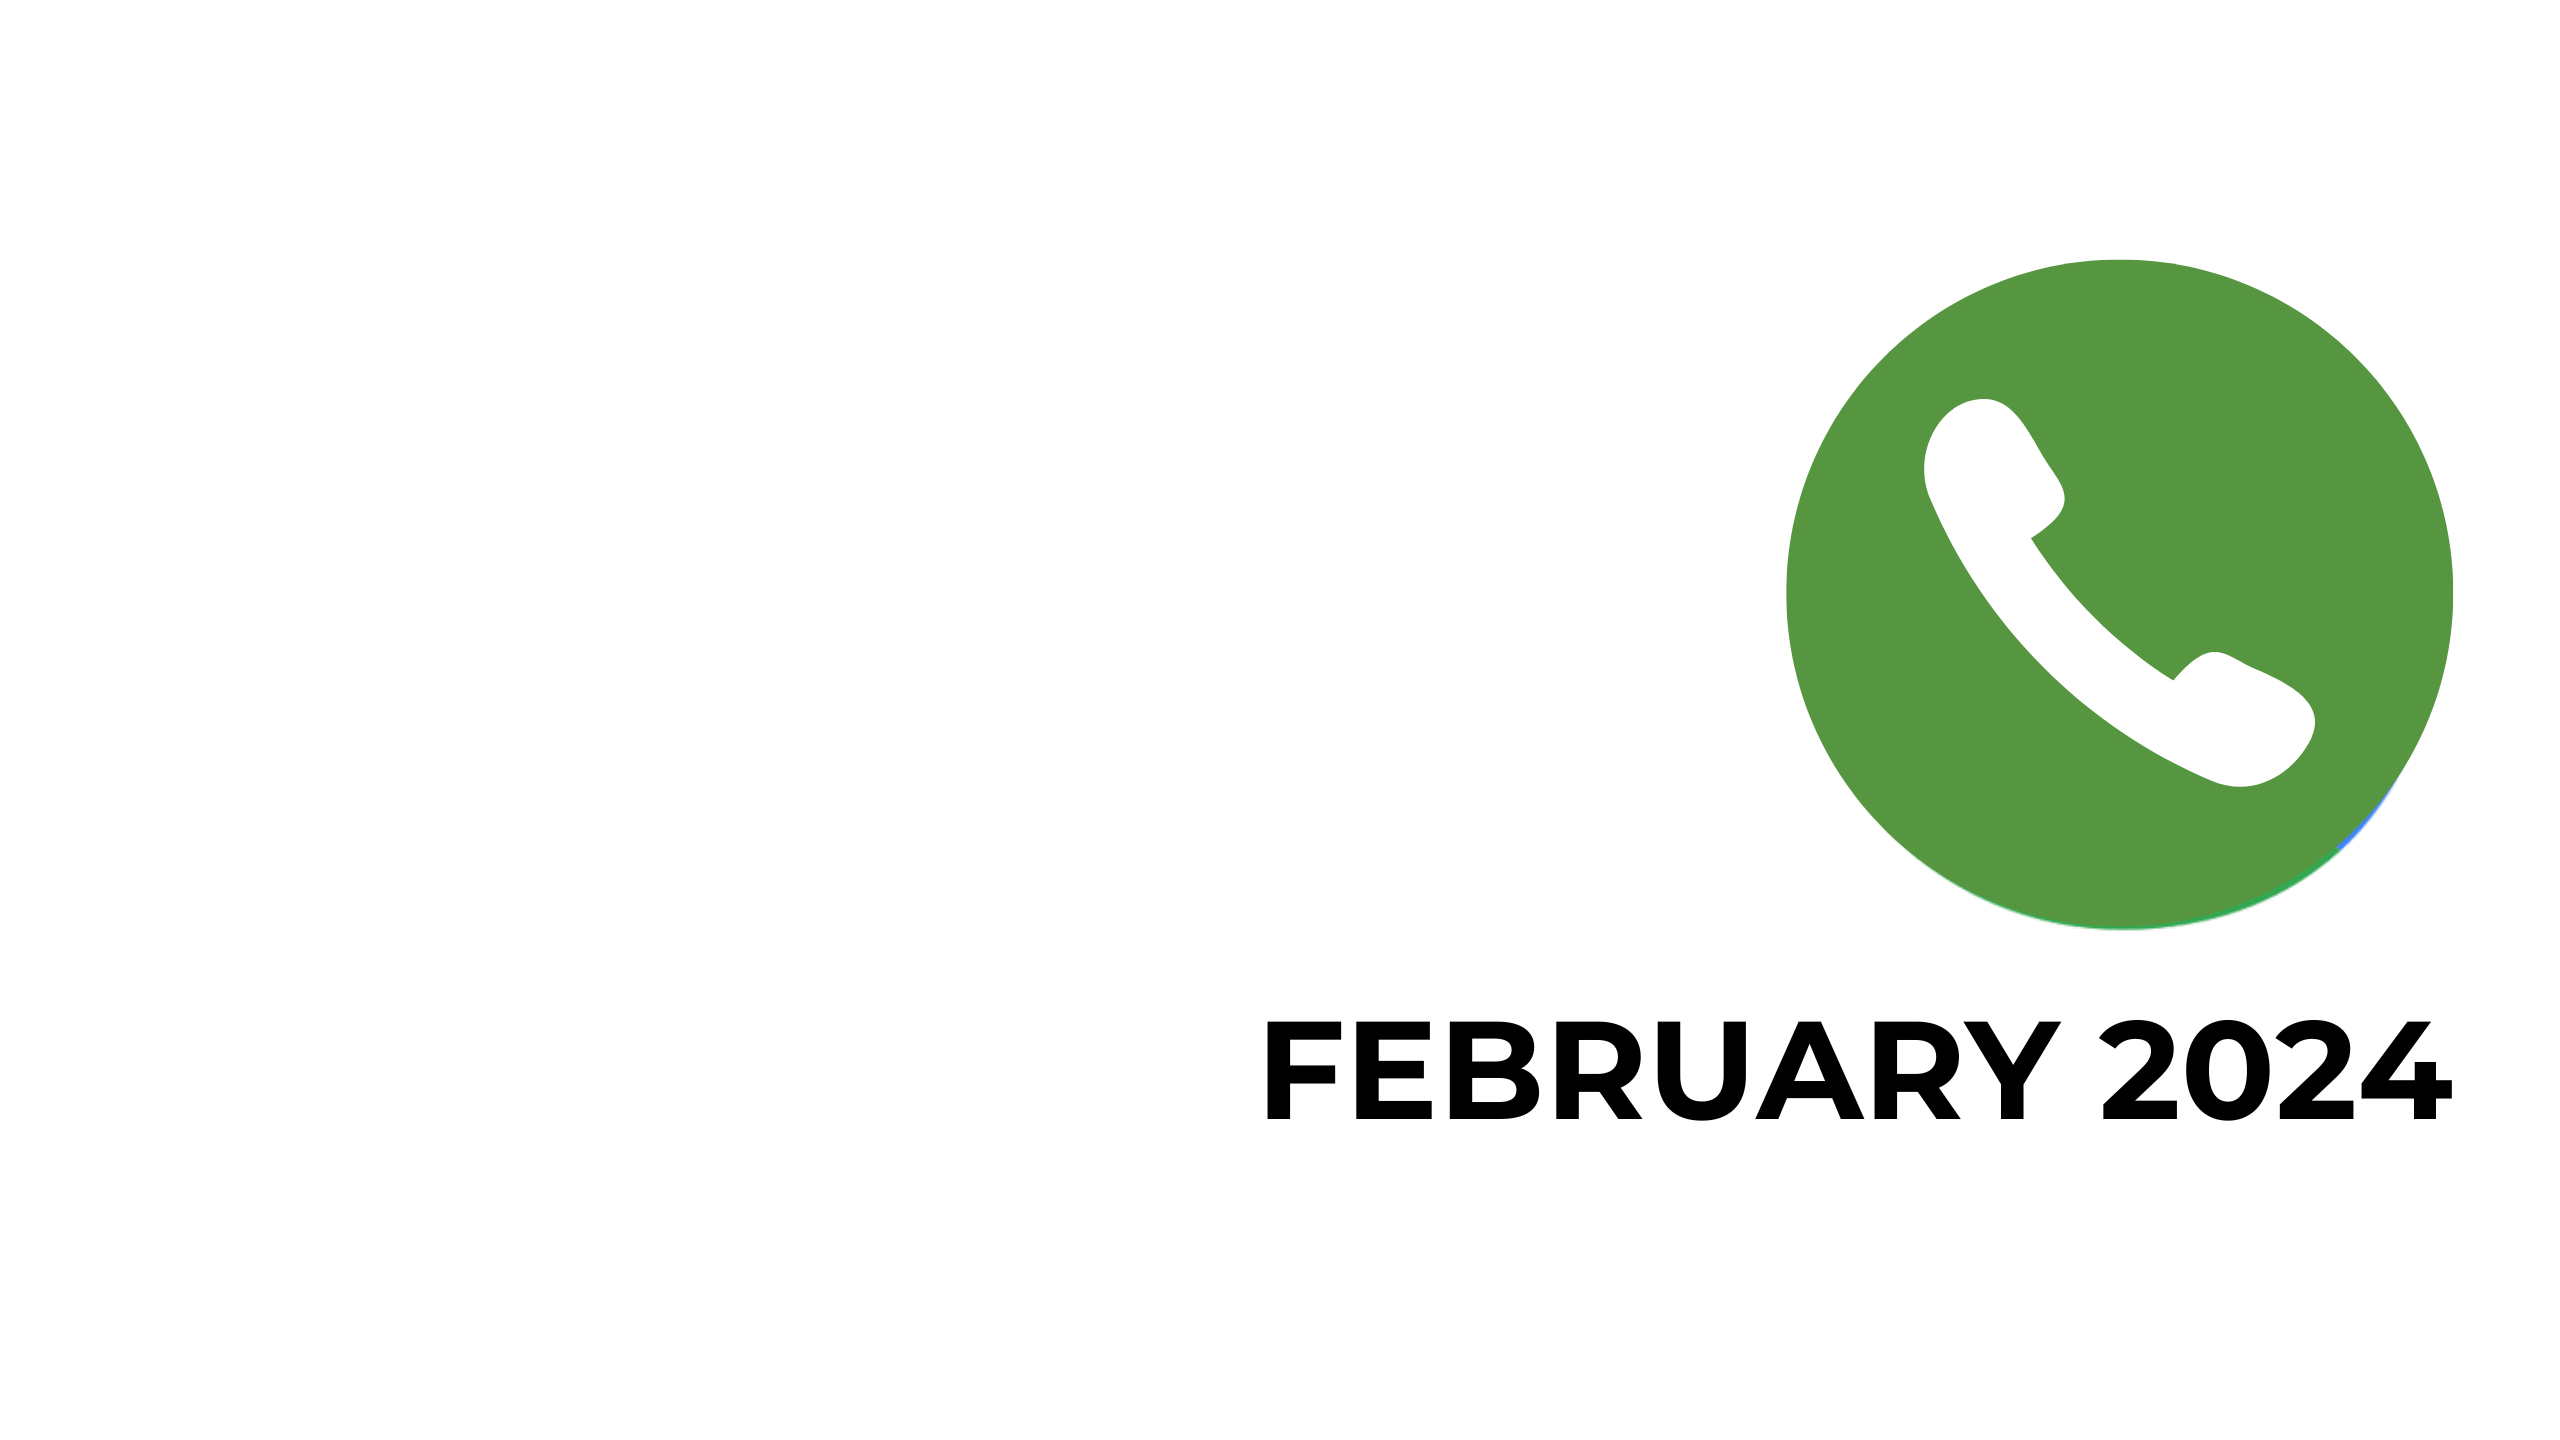 FEBRUARY 24